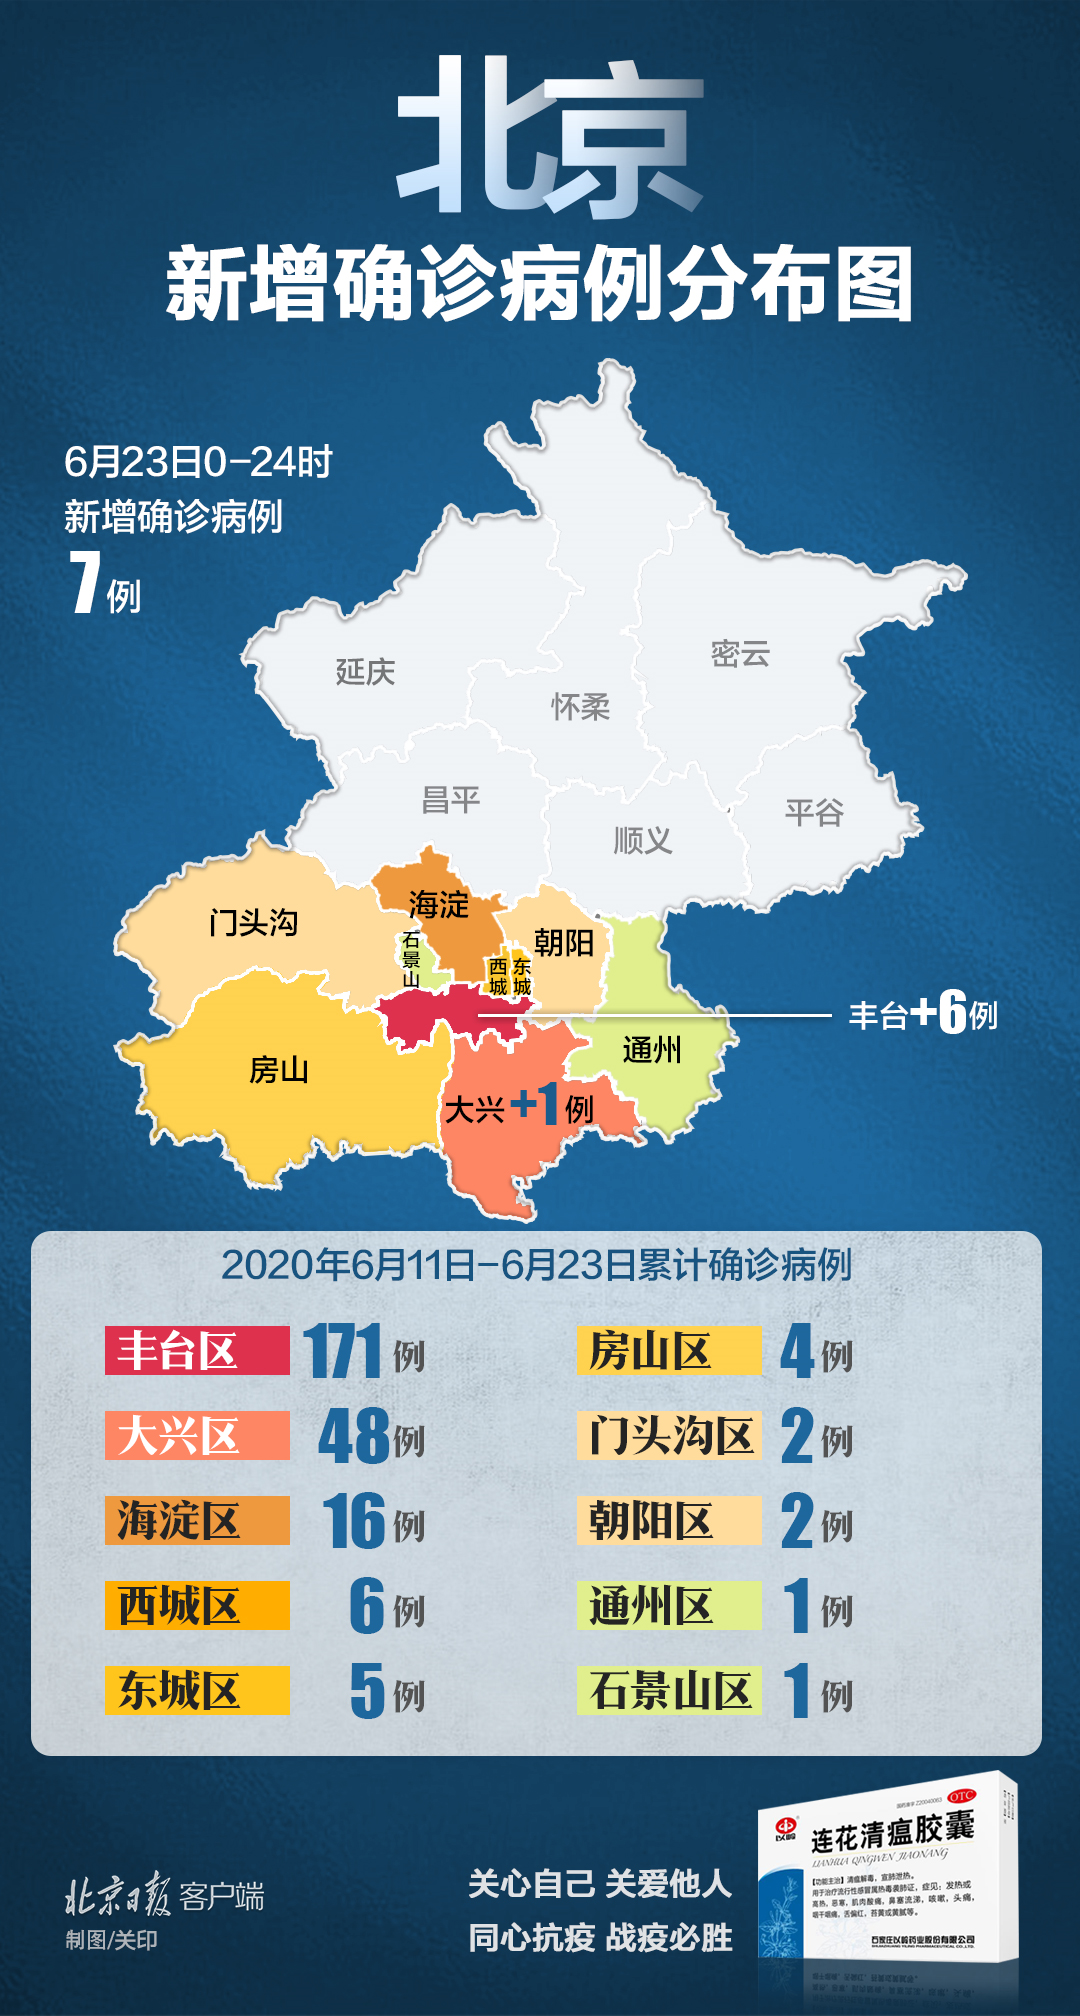 北京6月11日以来累计确诊256例,丰台区171例